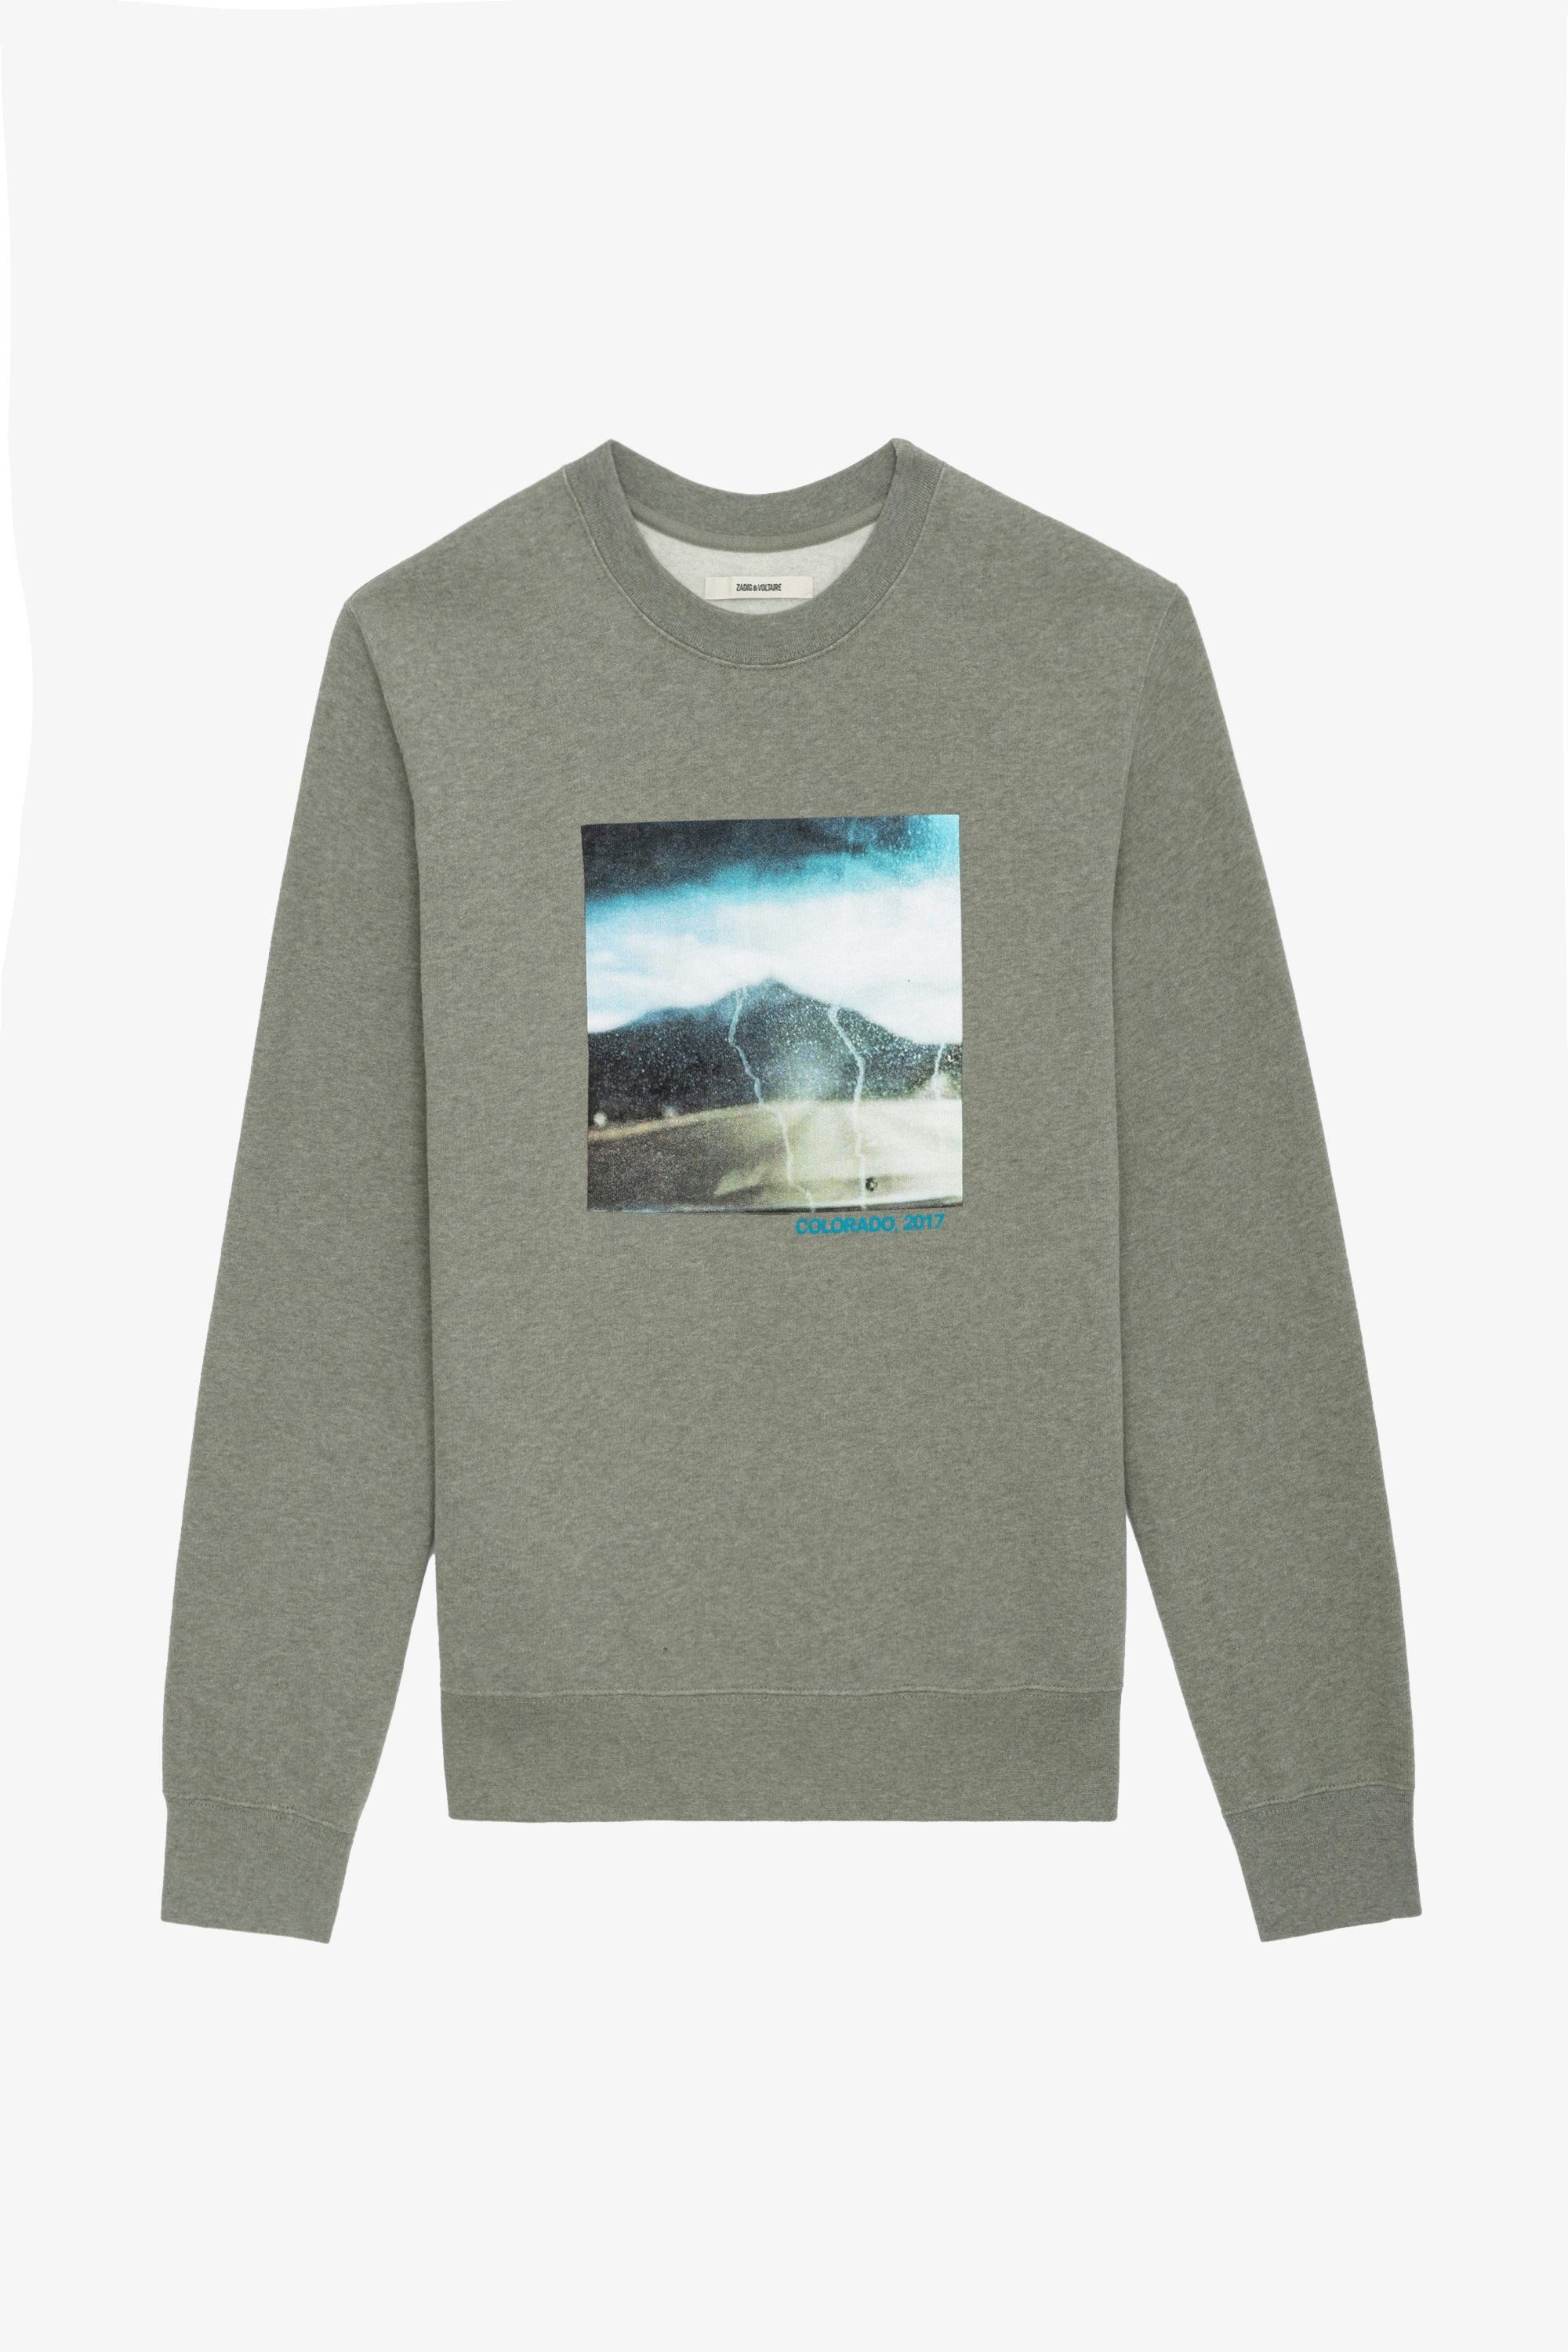 Sweatshirt Simba Photoprint - Sweatshirt gris à manches longues, imprimés photoprint et message.